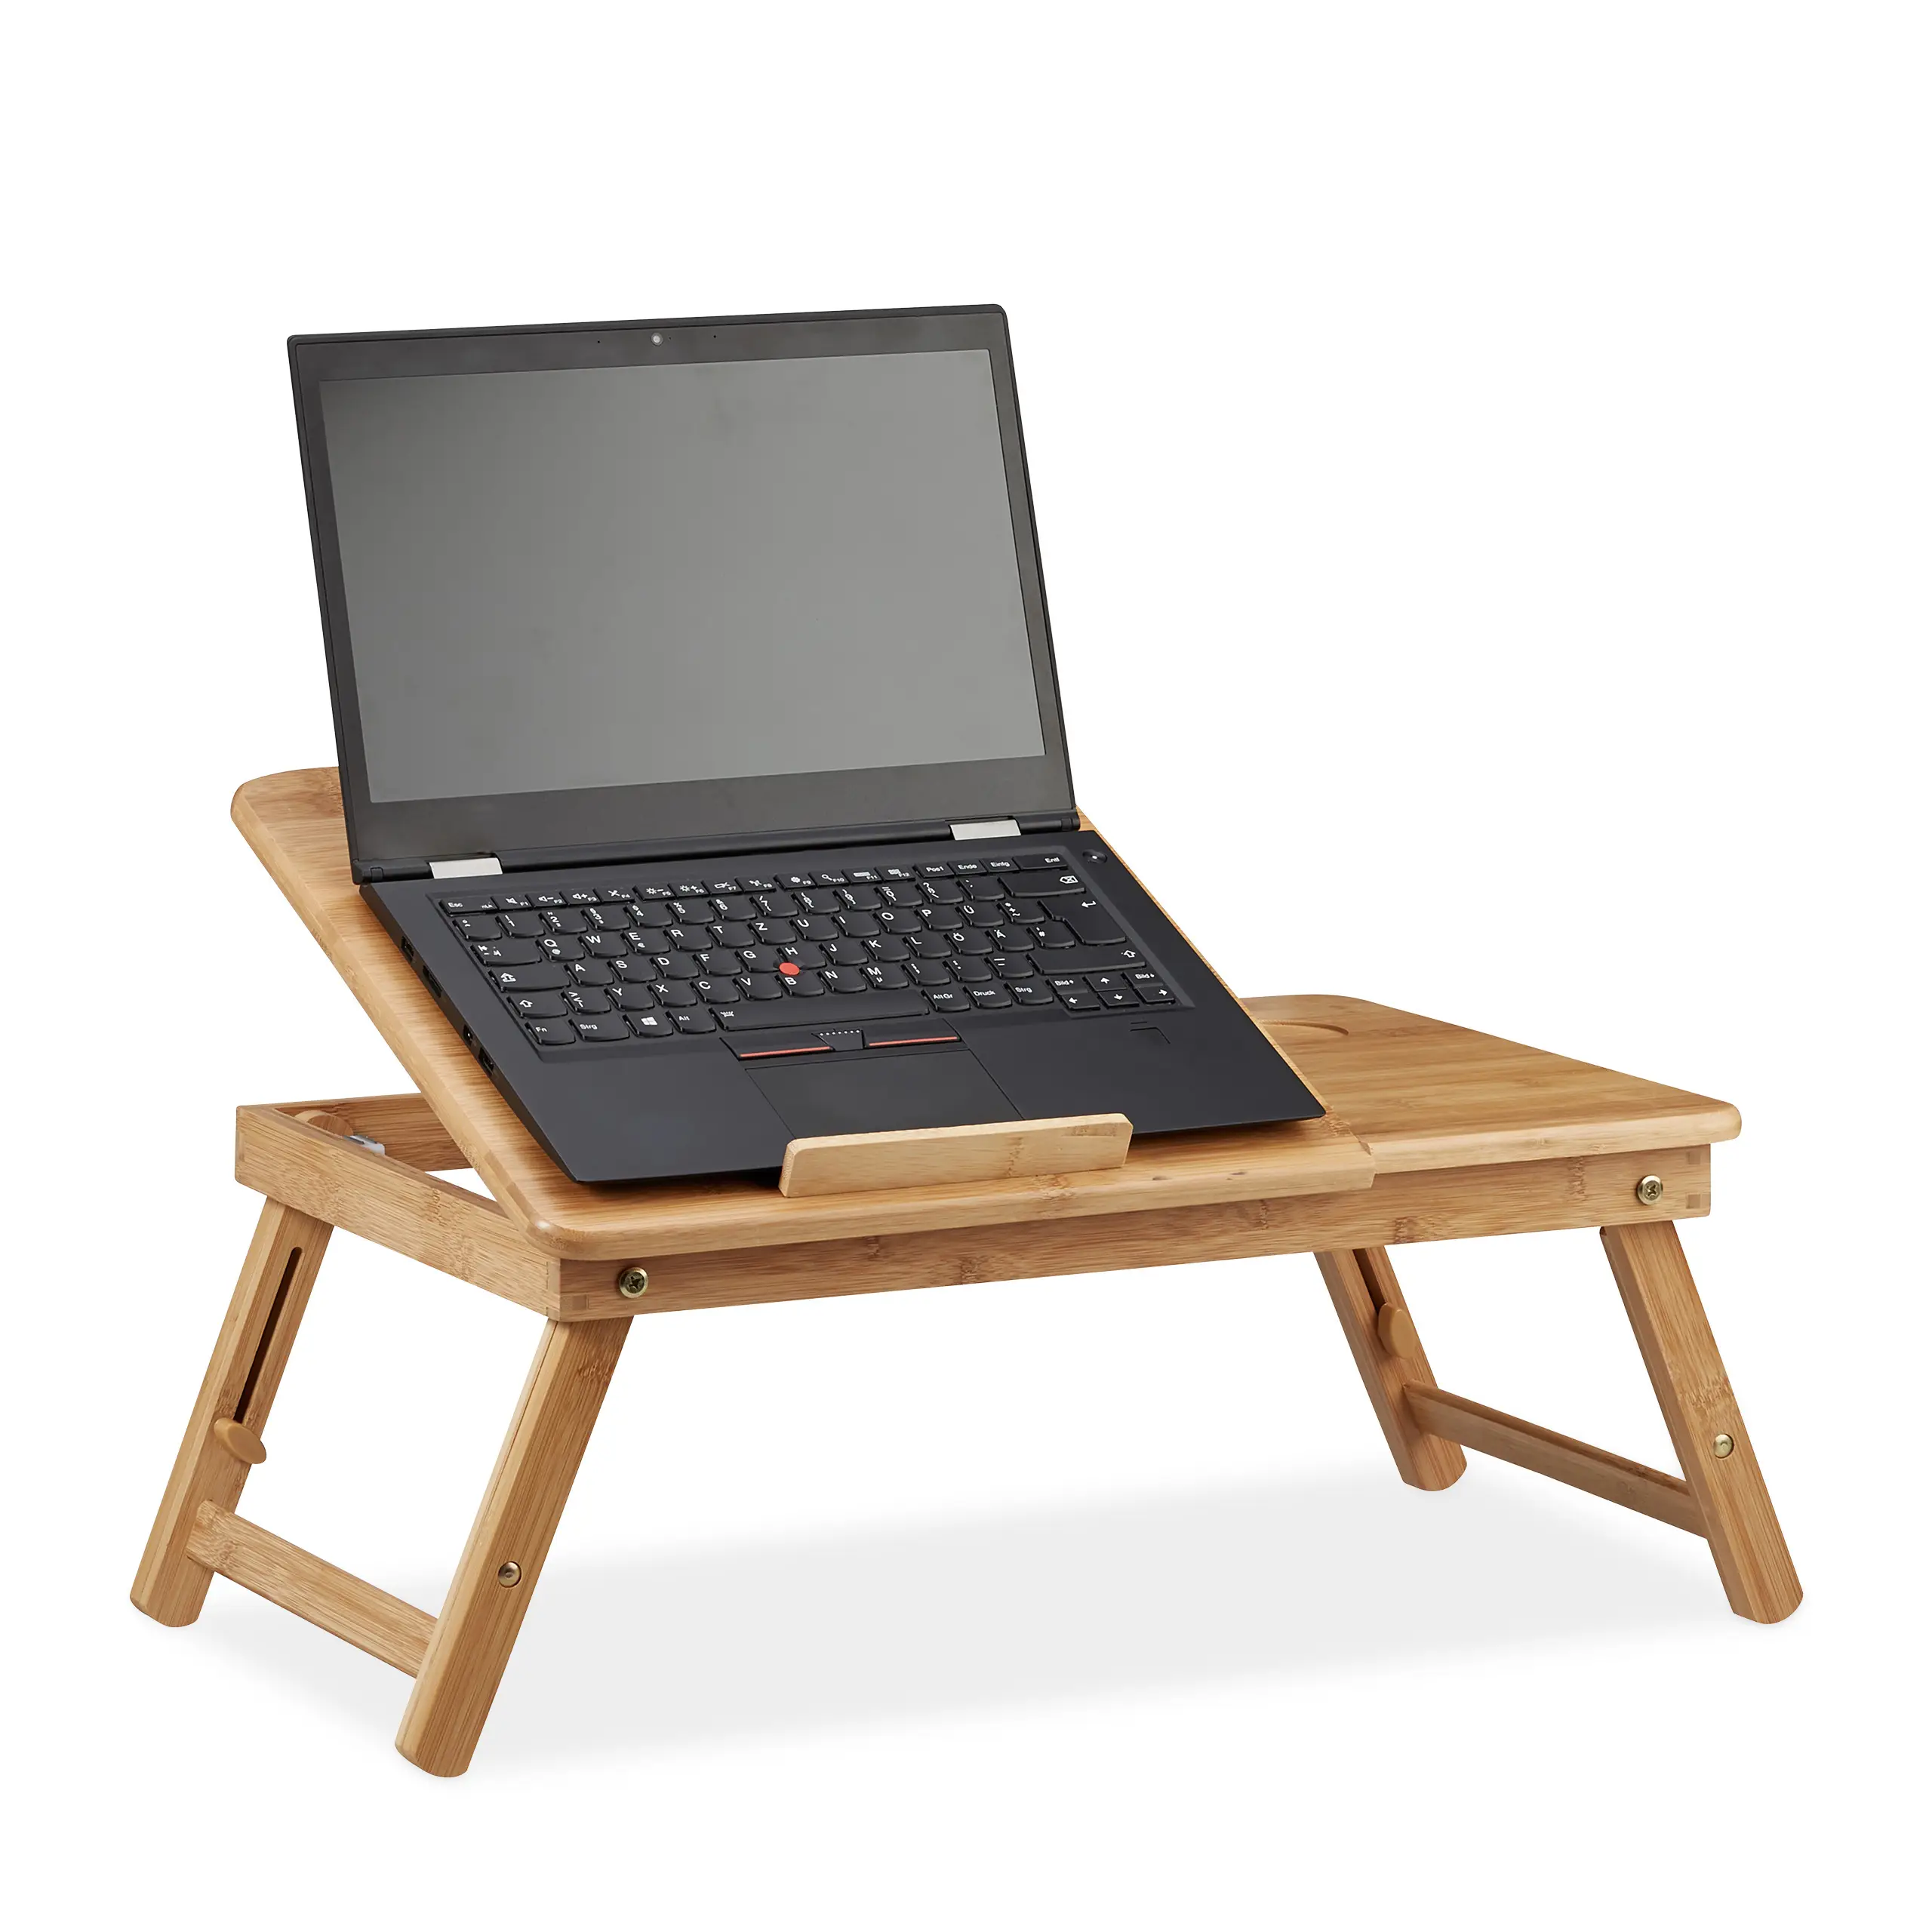 H枚henverstellbarer Laptoptisch Bambus | Tisch-Zubehör